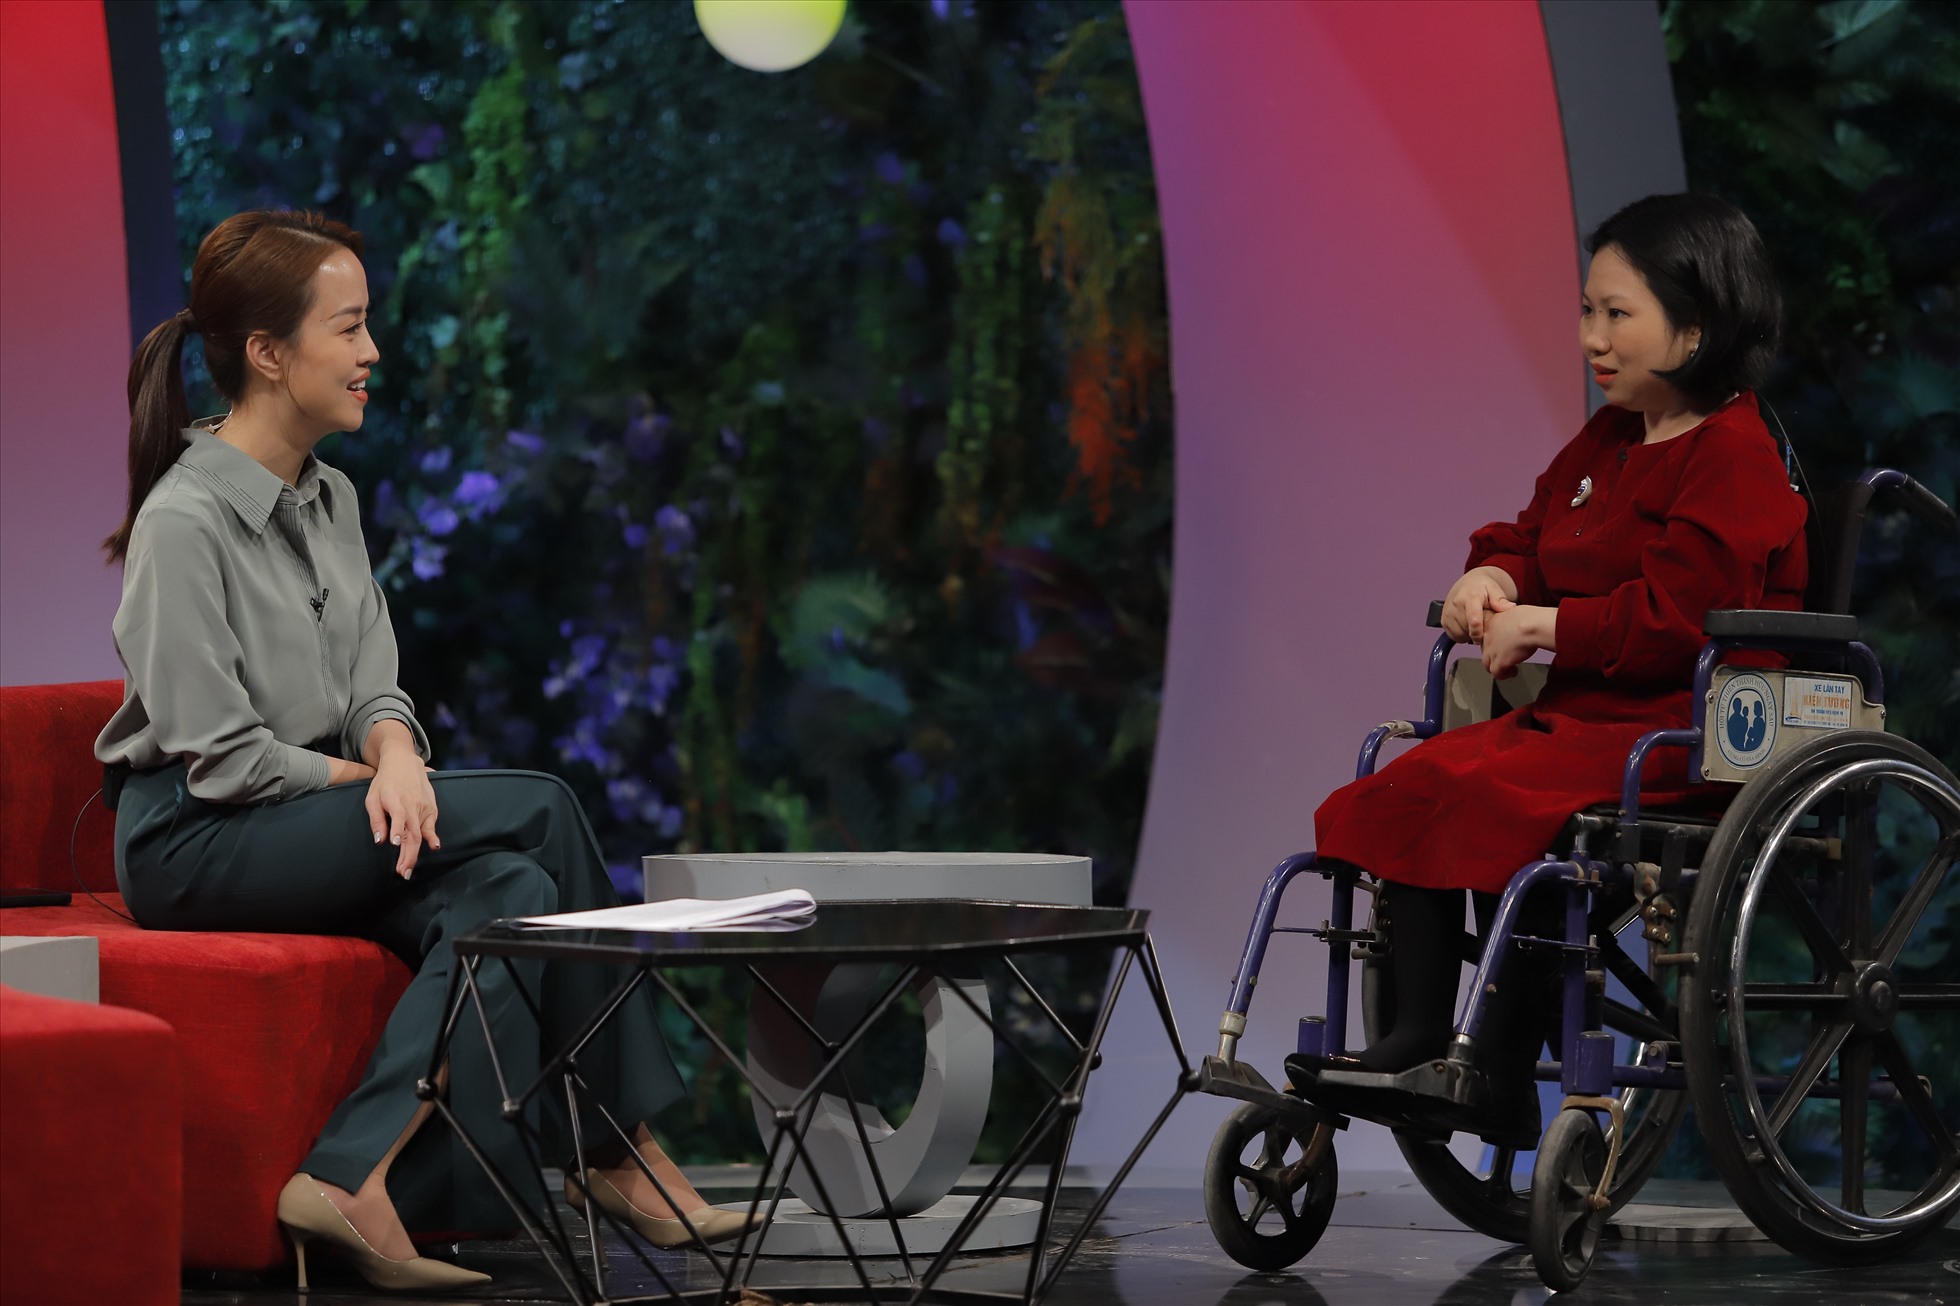 Câu chuyện nghị lực vượt qua khó khăn của chị Đỗ Thu Hương khiến khán giả chương trình “Trạm yêu thương” không khỏi xúc động. Ảnh: VTV